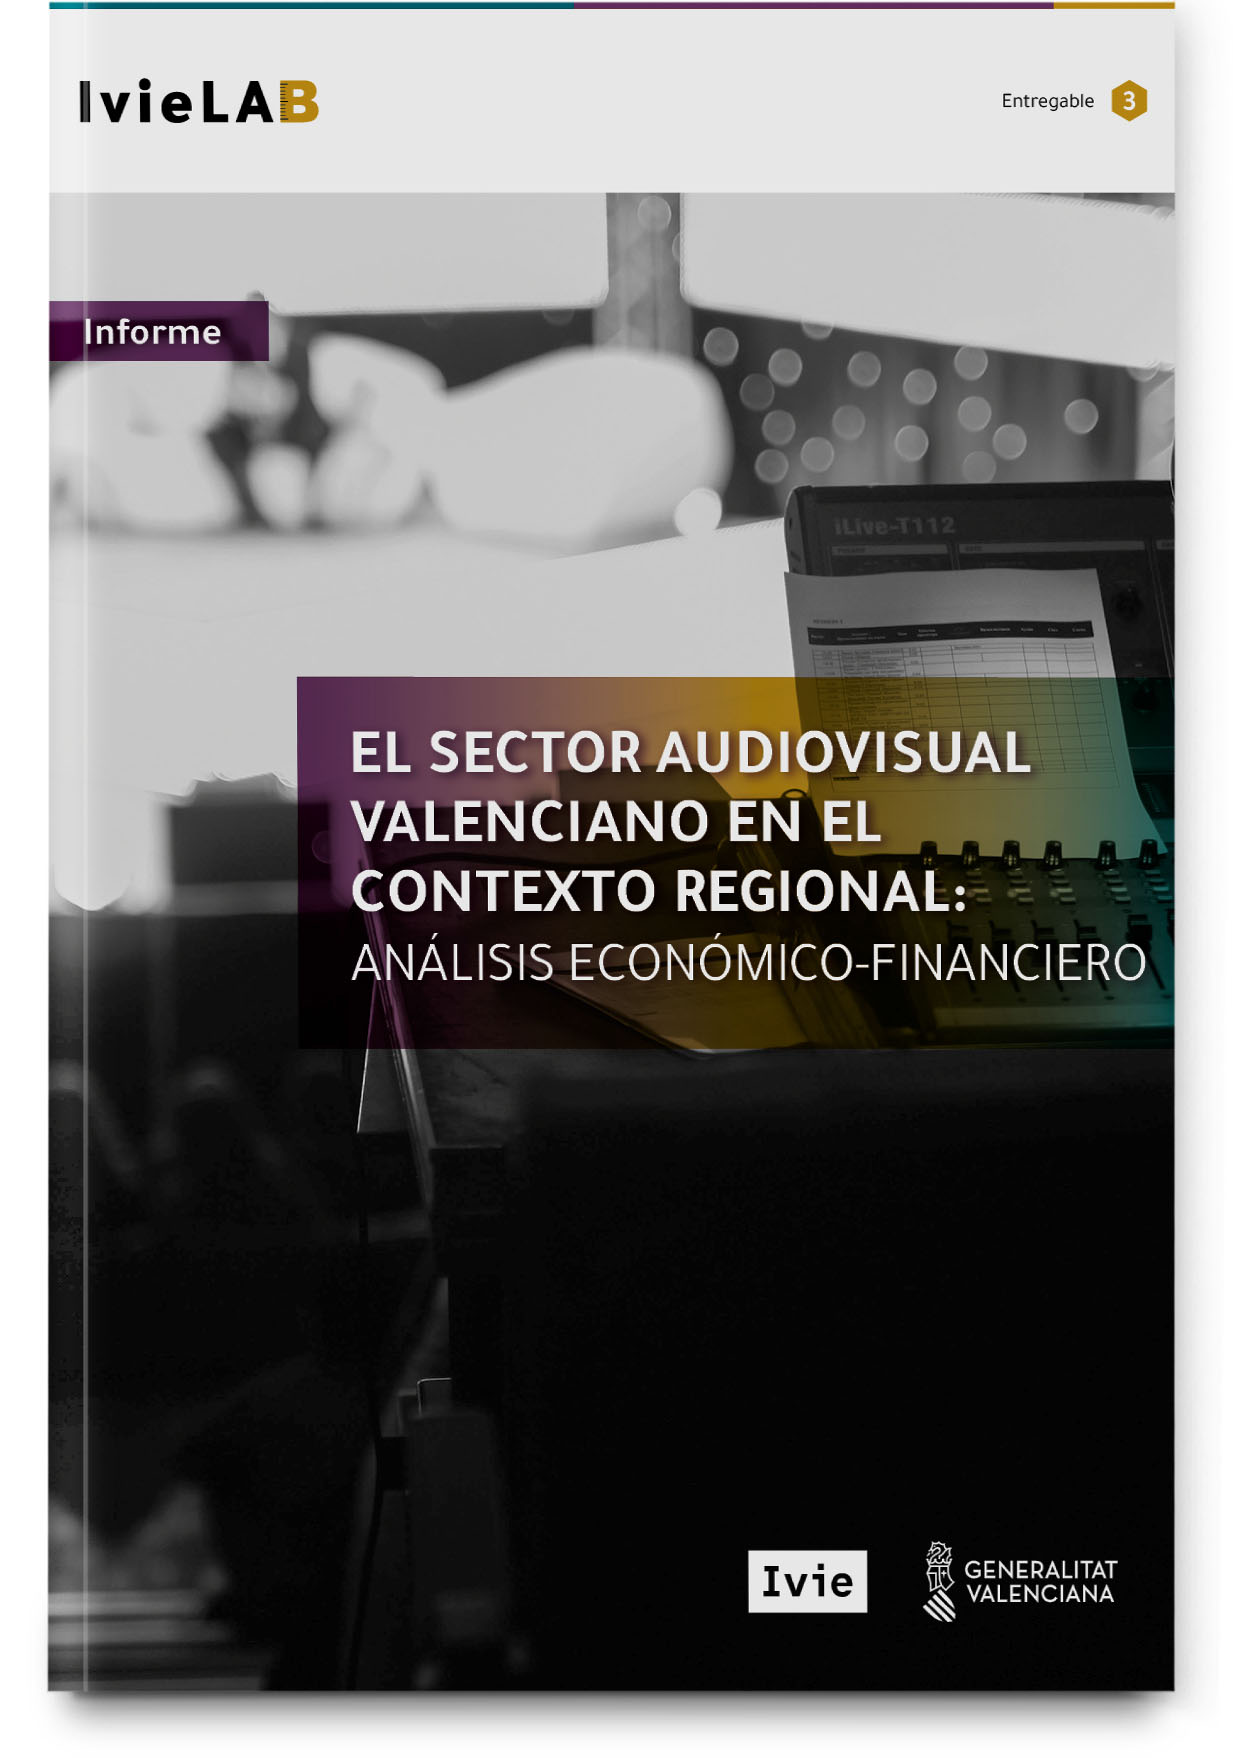 IvieLAB: El sector audiovisual valenciano en el contexto regional